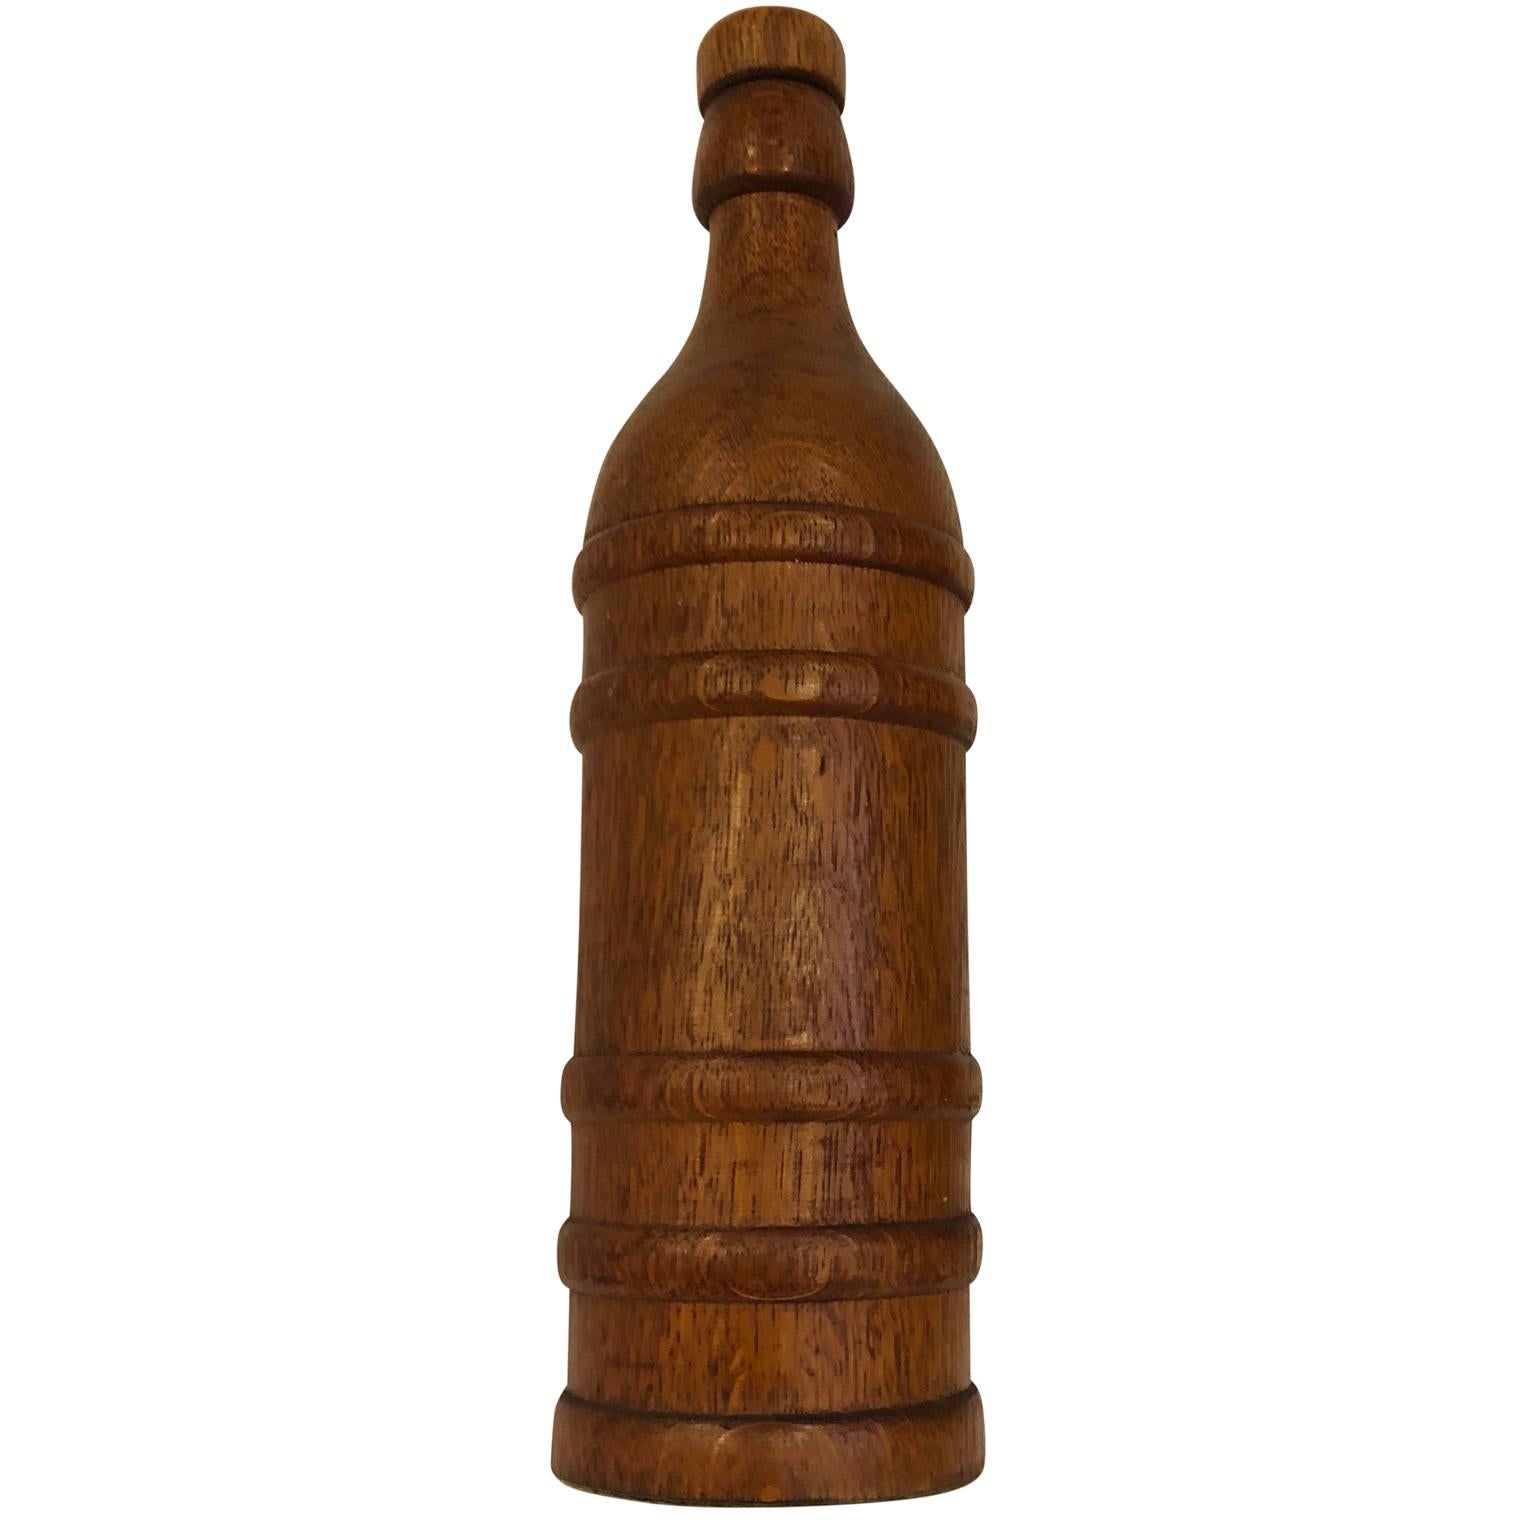 Vintage dekorative hölzerne Dekanter Flasche (Handgefertigt)